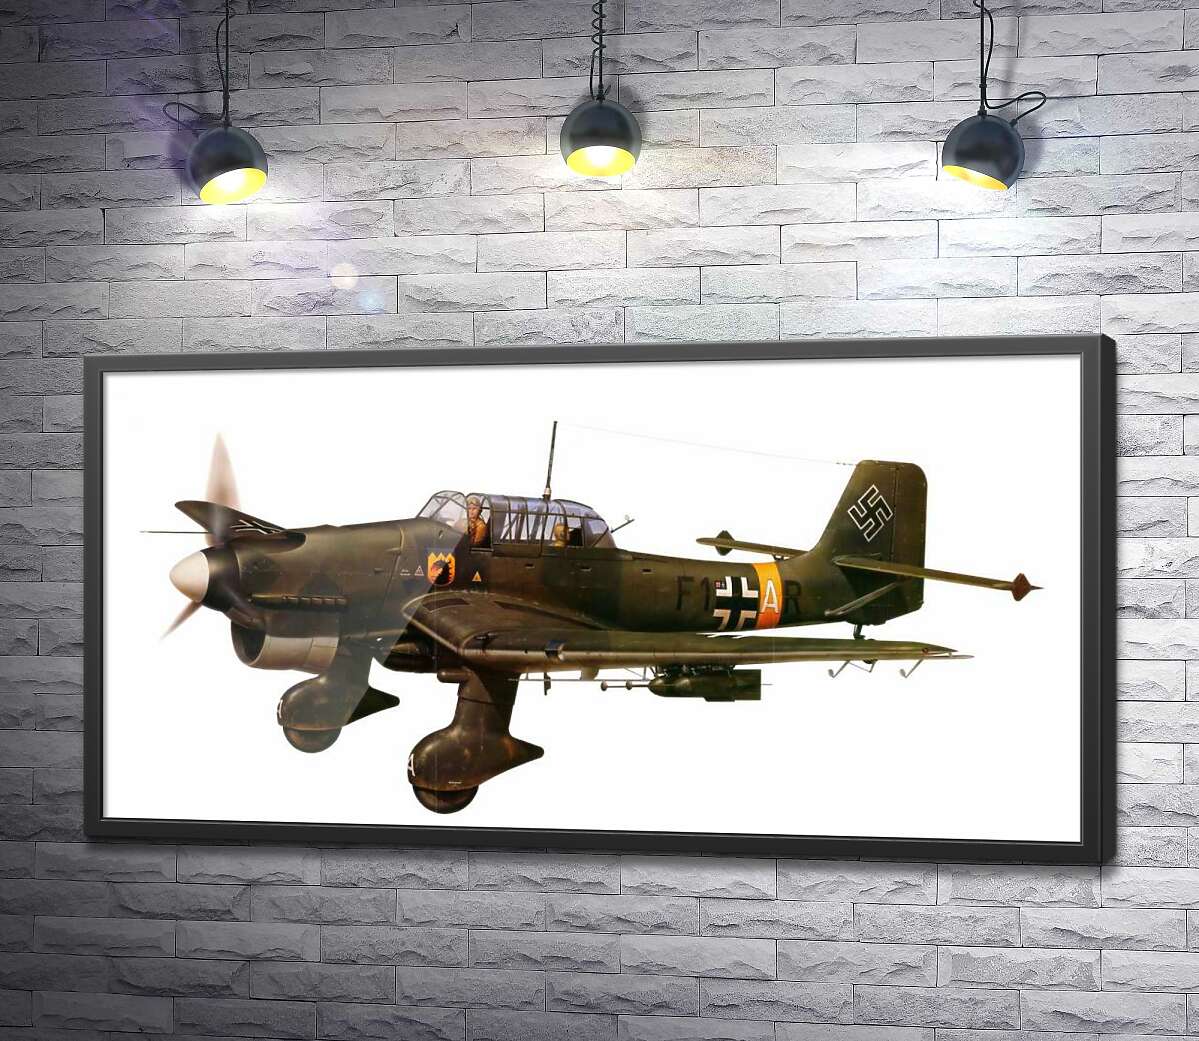 постер "Штука" (Junkers Ju 87) немецкий пикирующий бомбардировщик времен Второй мировой войны